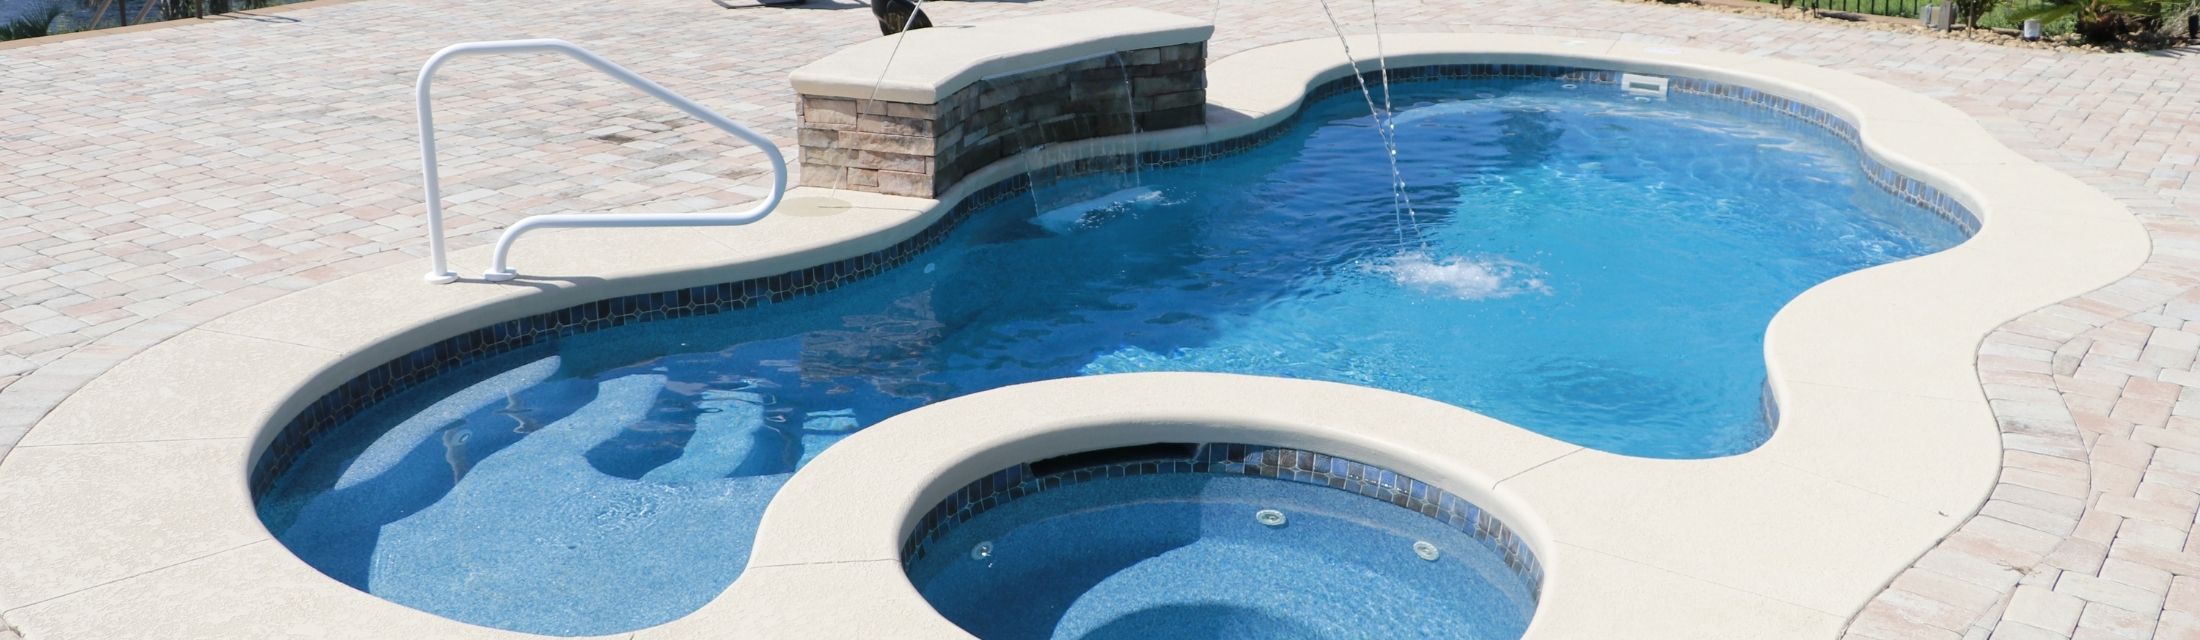 Narellan-Pools-Monument-Fiberglass-Swimming-Pool-in-Blue-Azurite